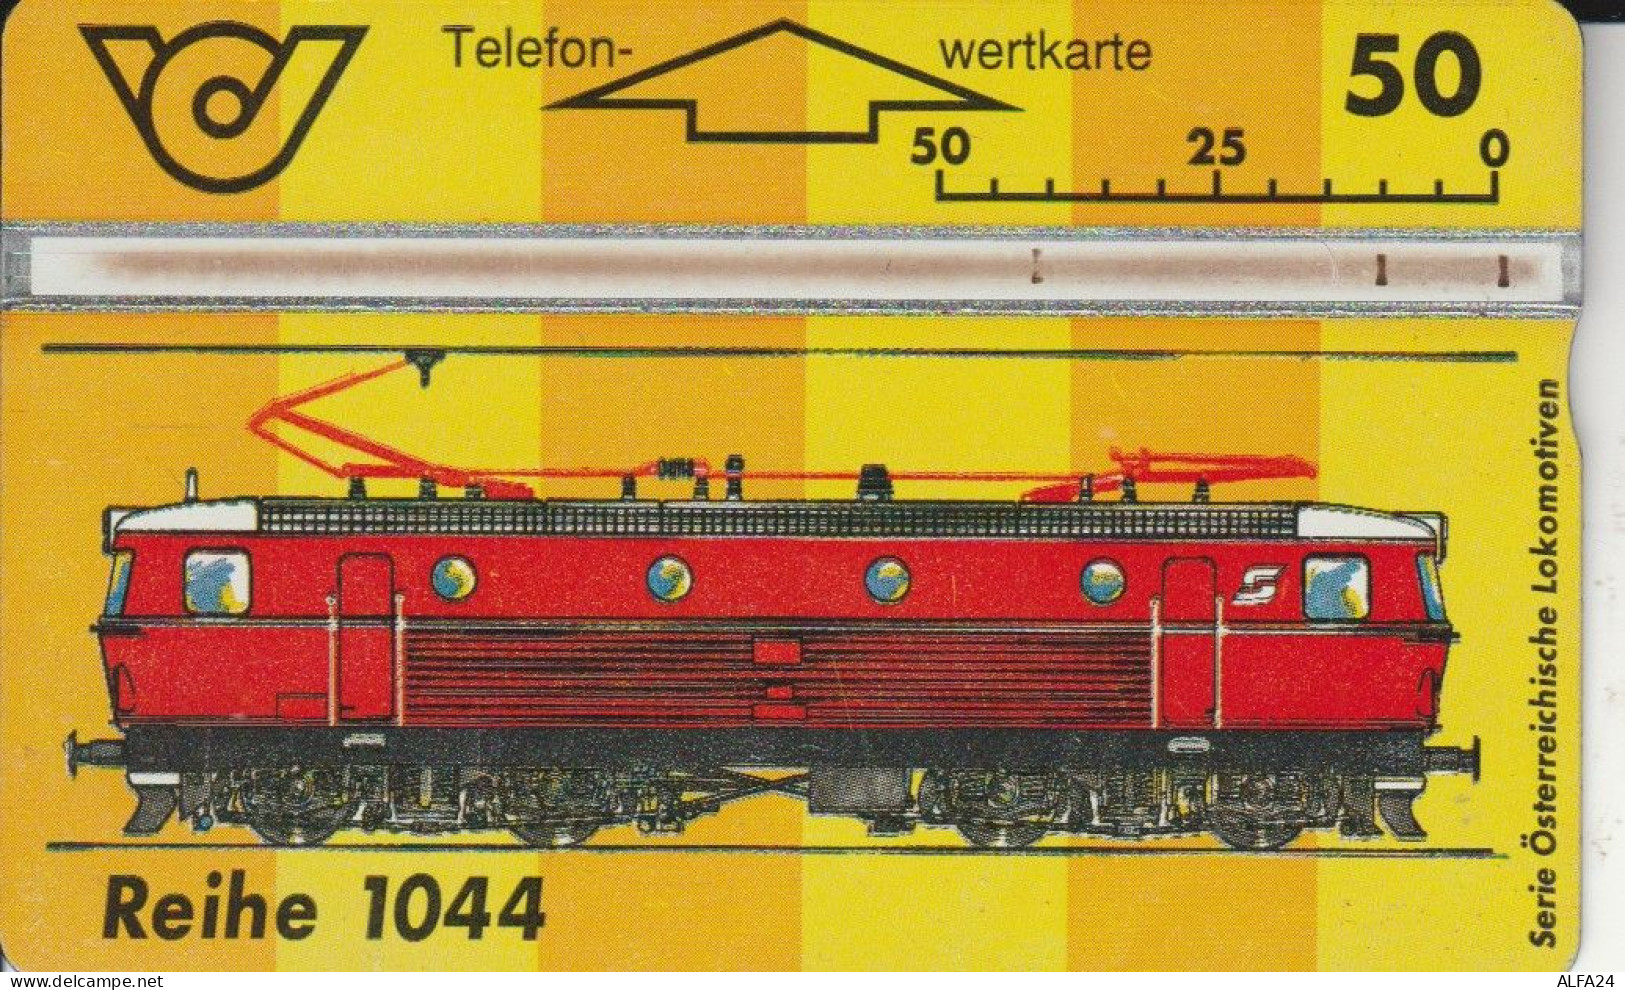 PHONE CARD AUSTRIA (CK6201 - Oesterreich